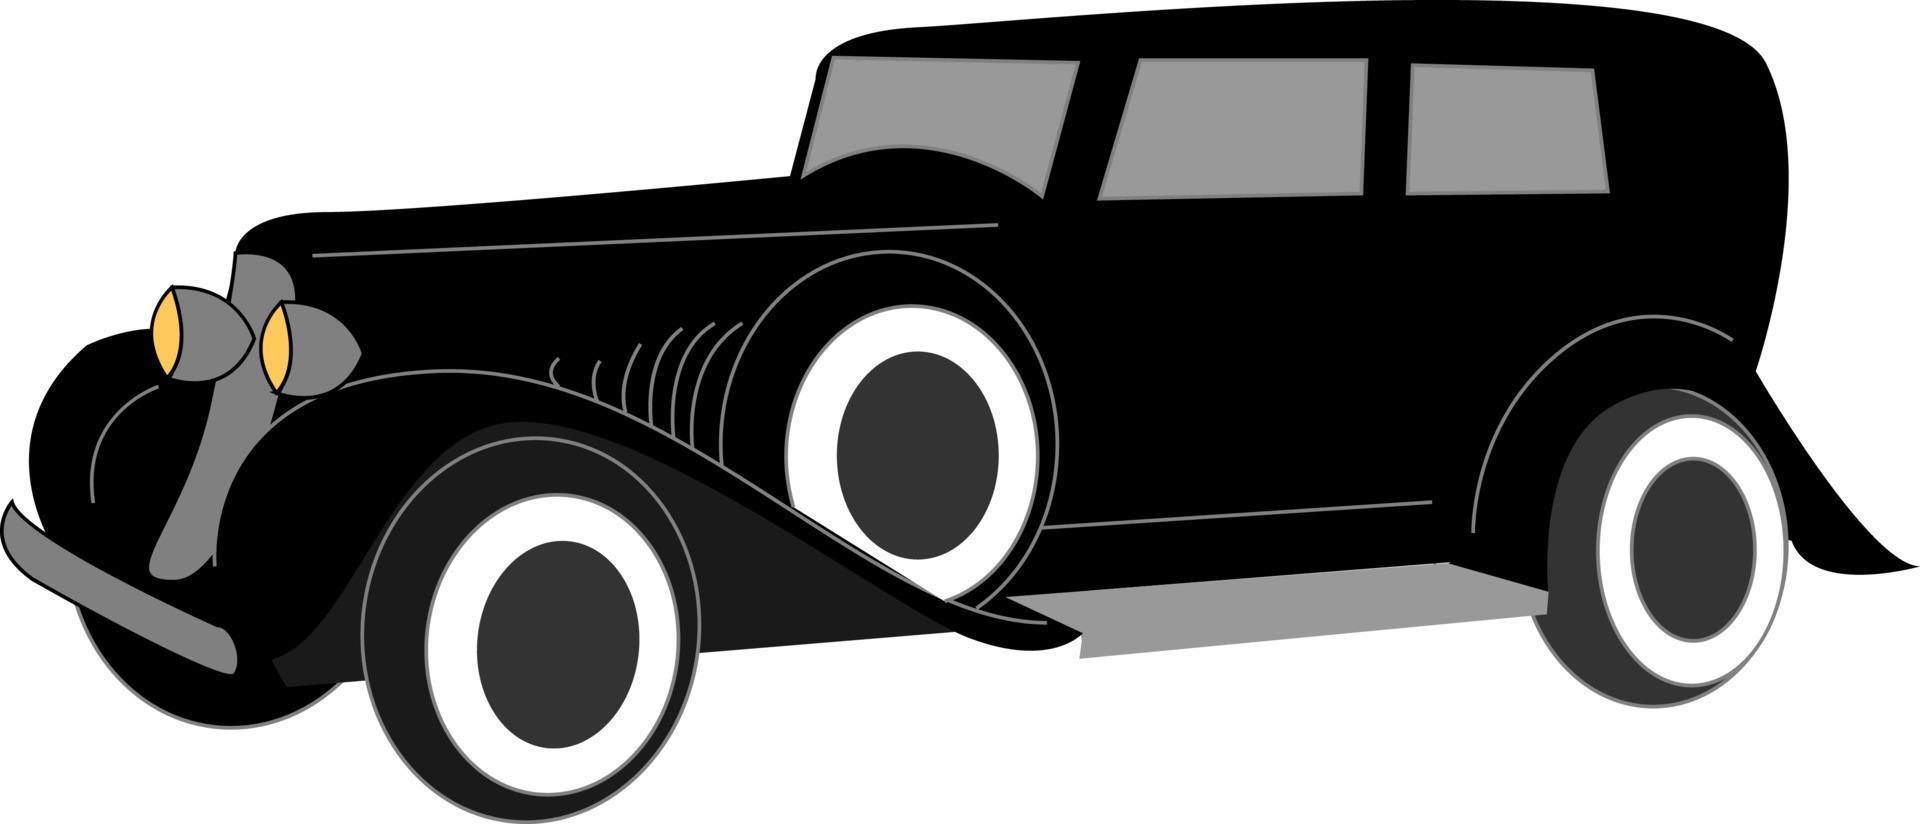 vieille voiture rétro noire, illustration, vecteur sur fond blanc.